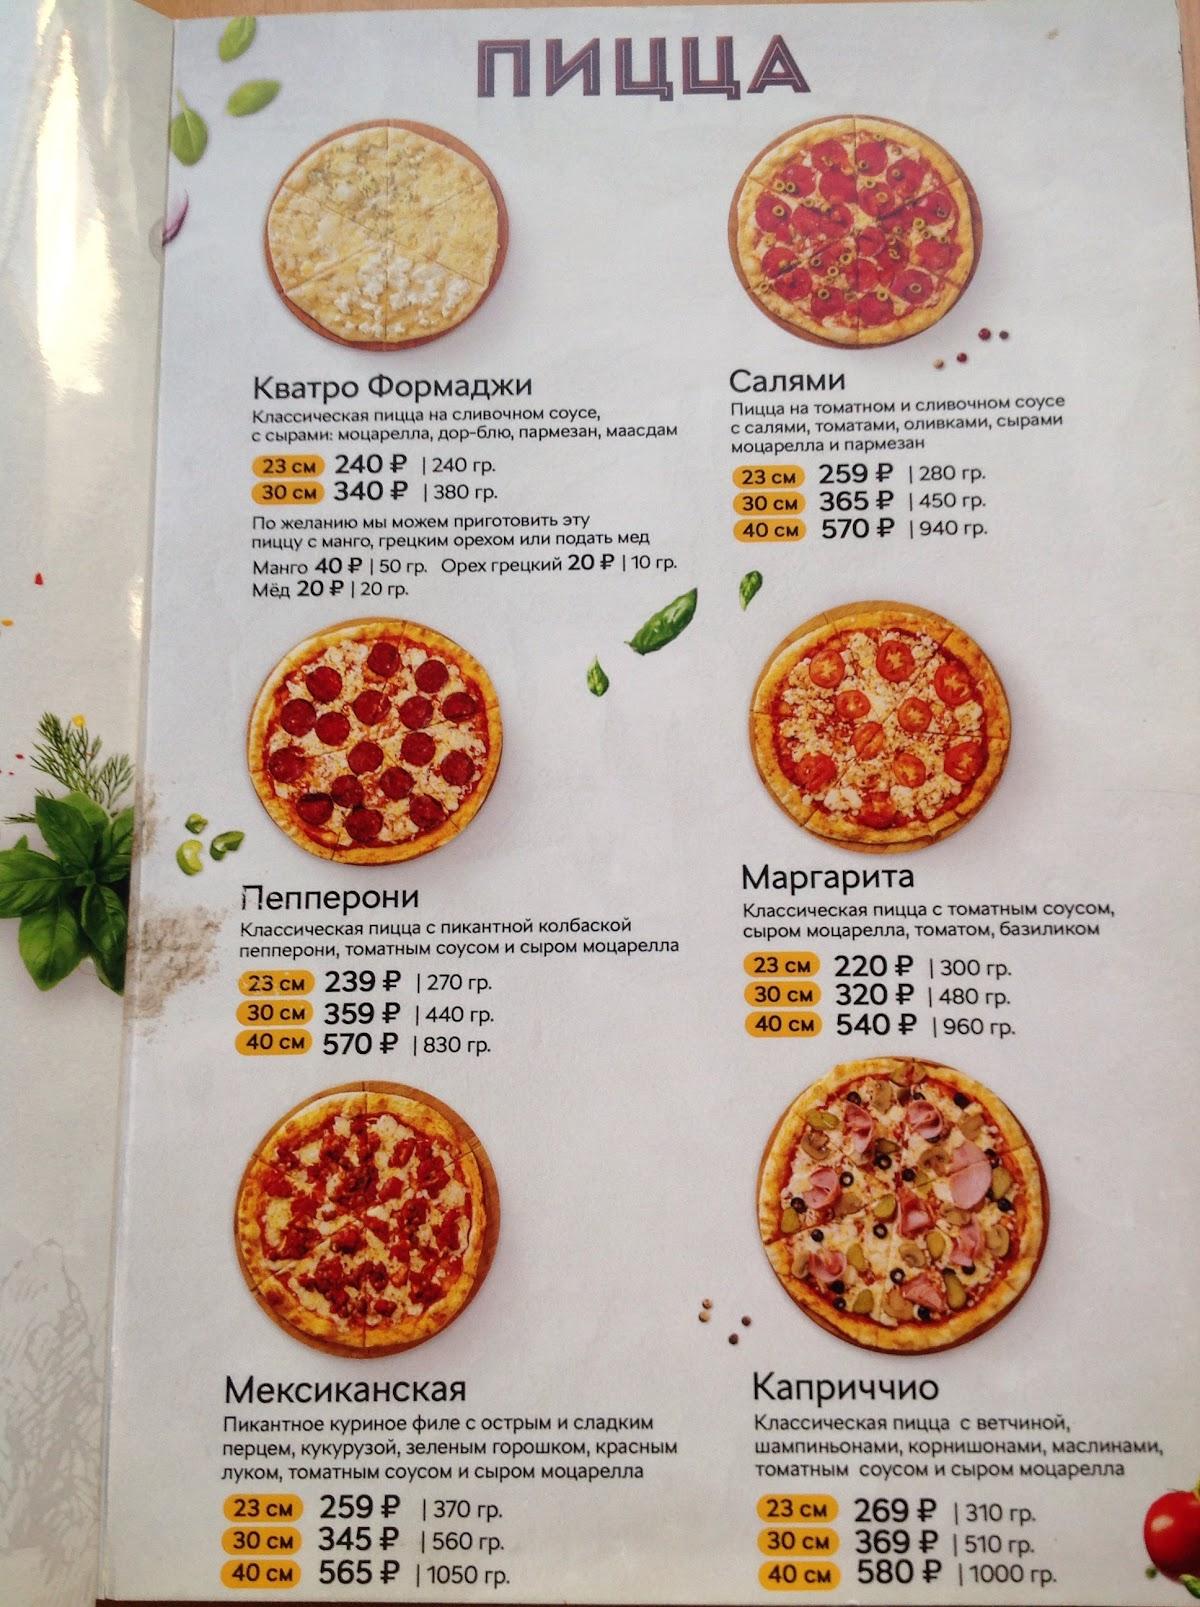 ассортимент пицц в милано фото 83